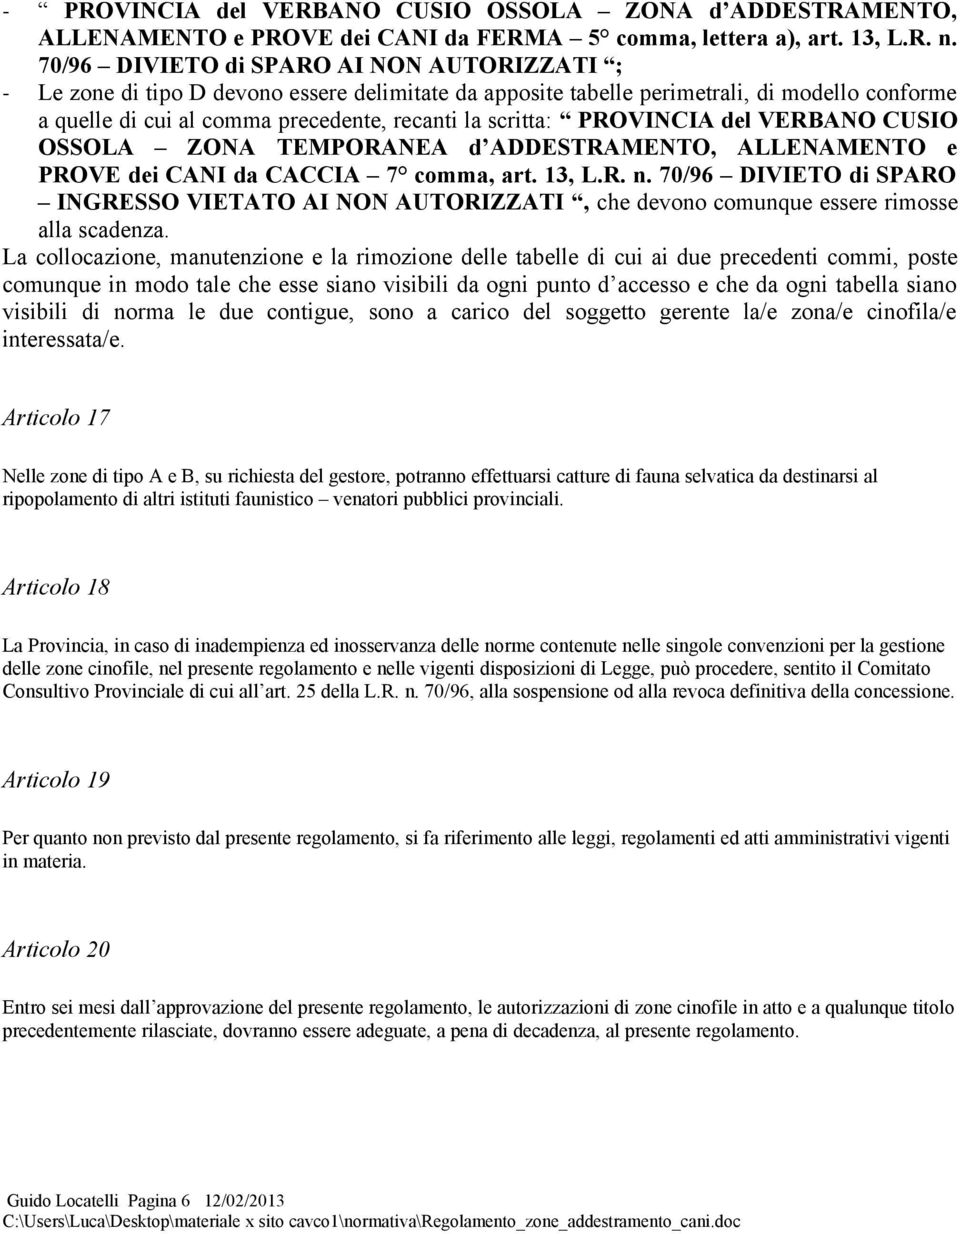 PROVINCIA del VERBANO CUSIO OSSOLA ZONA TEMPORANEA d ADDESTRAMENTO, ALLENAMENTO e PROVE dei CANI da CACCIA 7 comma, art. 13, L.R. n.